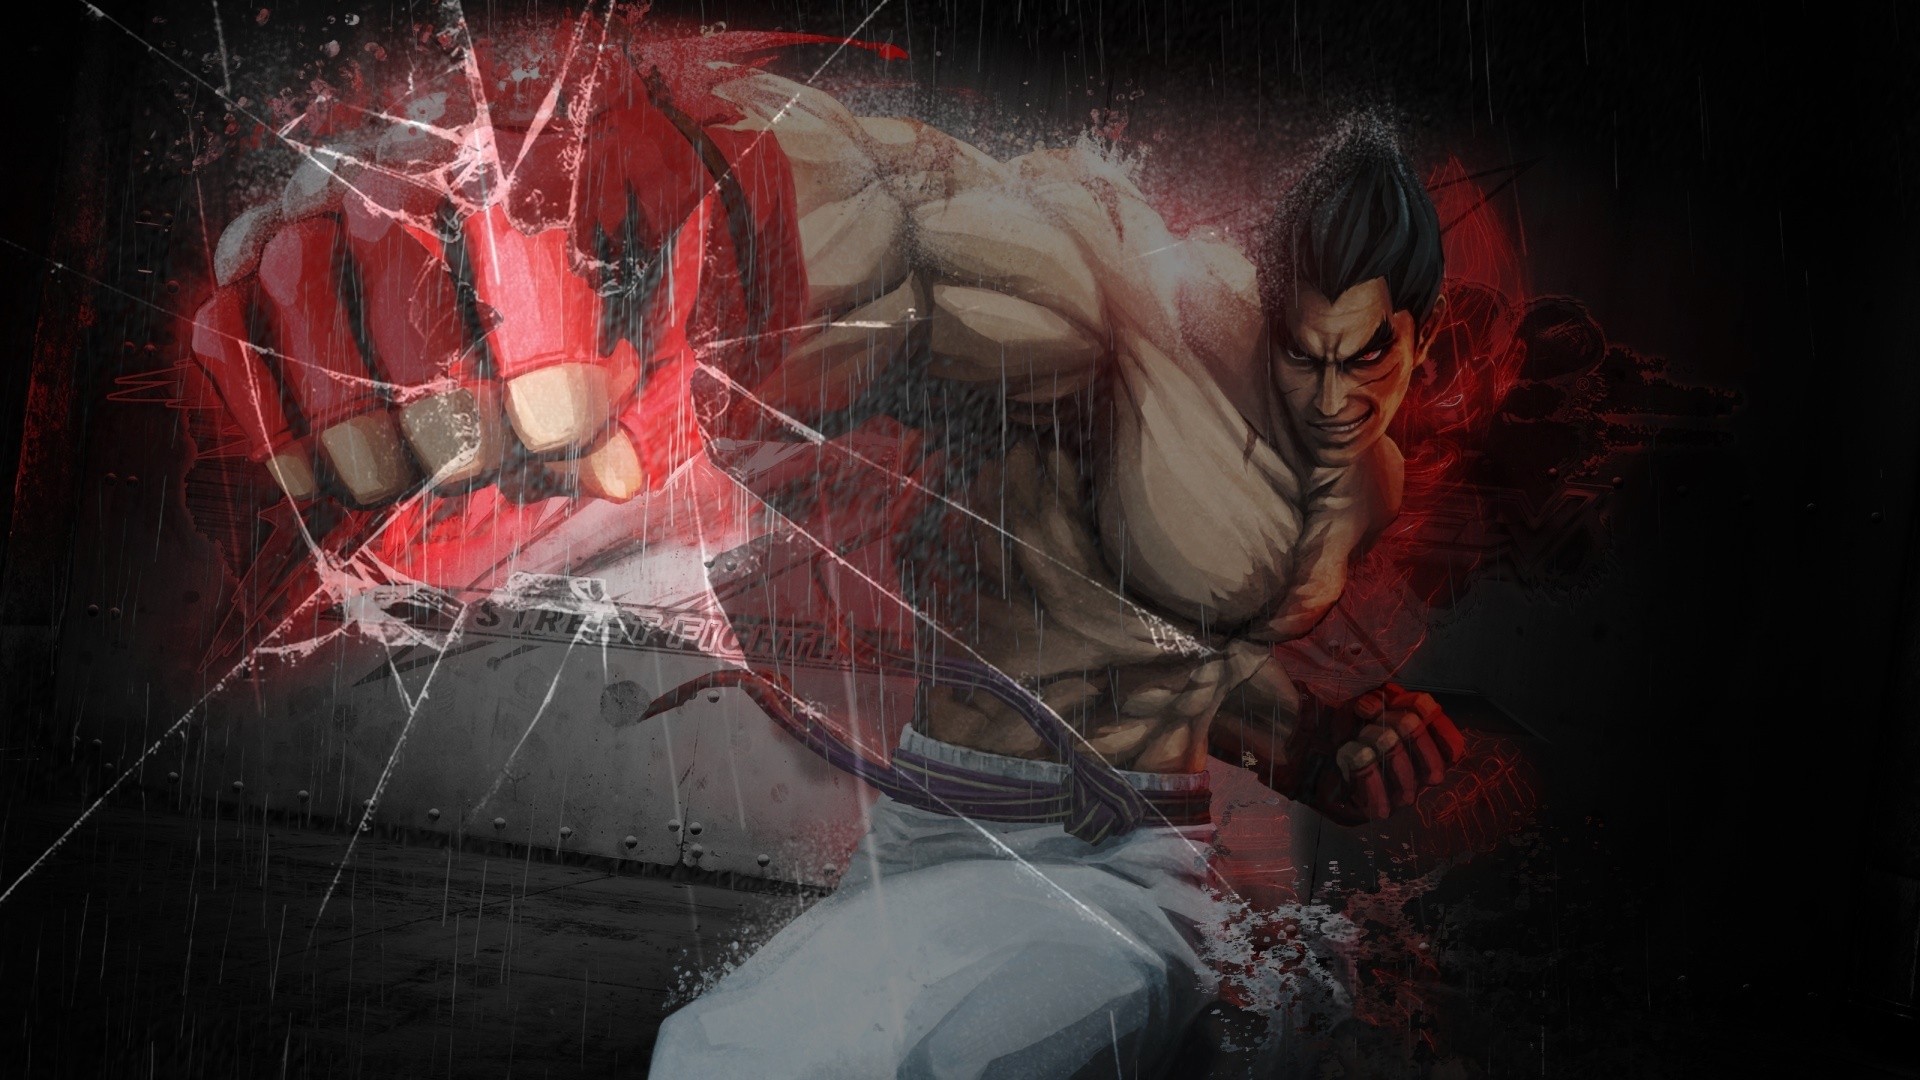 Hình nền Tekken Kazuya Mishima vỡ kính thật hoành tráng! Hãy xem ngay những hình nền Tekken này để cảm nhận sự lợi hại và quyết đoán của nhân vật này. Đường vỡ kính càng làm cho hình nền này trở nên độc đáo và ấn tượng hơn bao giờ hết!